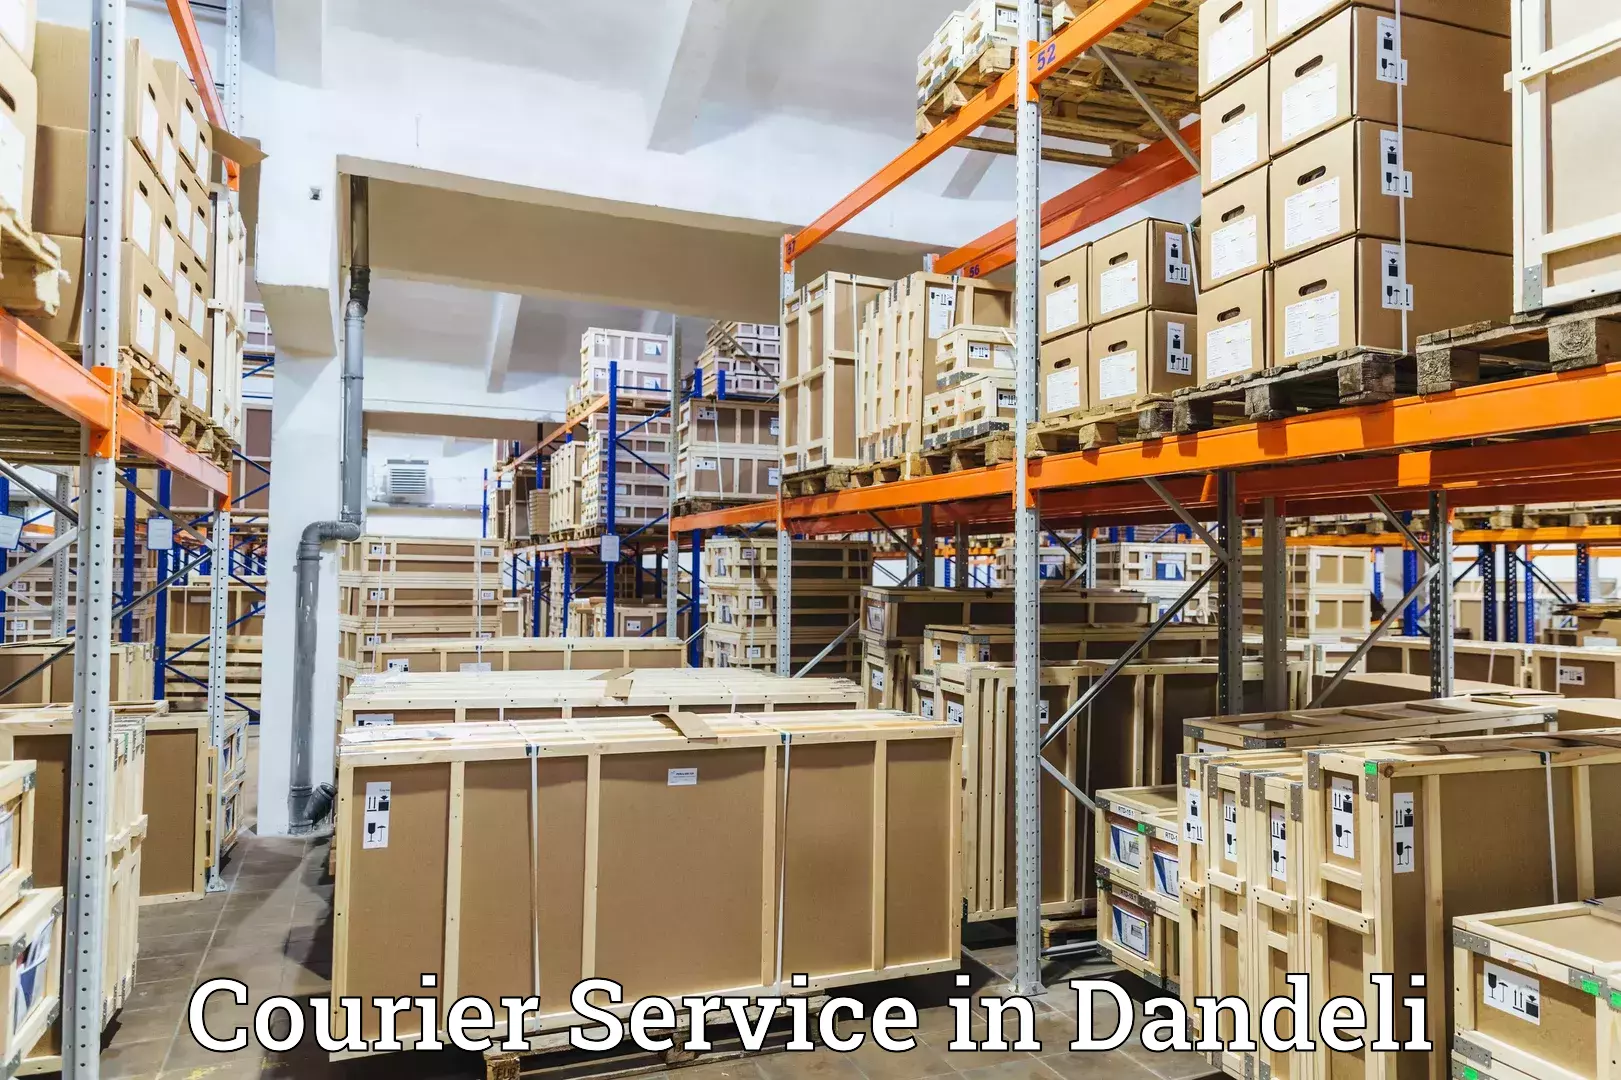 Lightweight parcel options in Dandeli